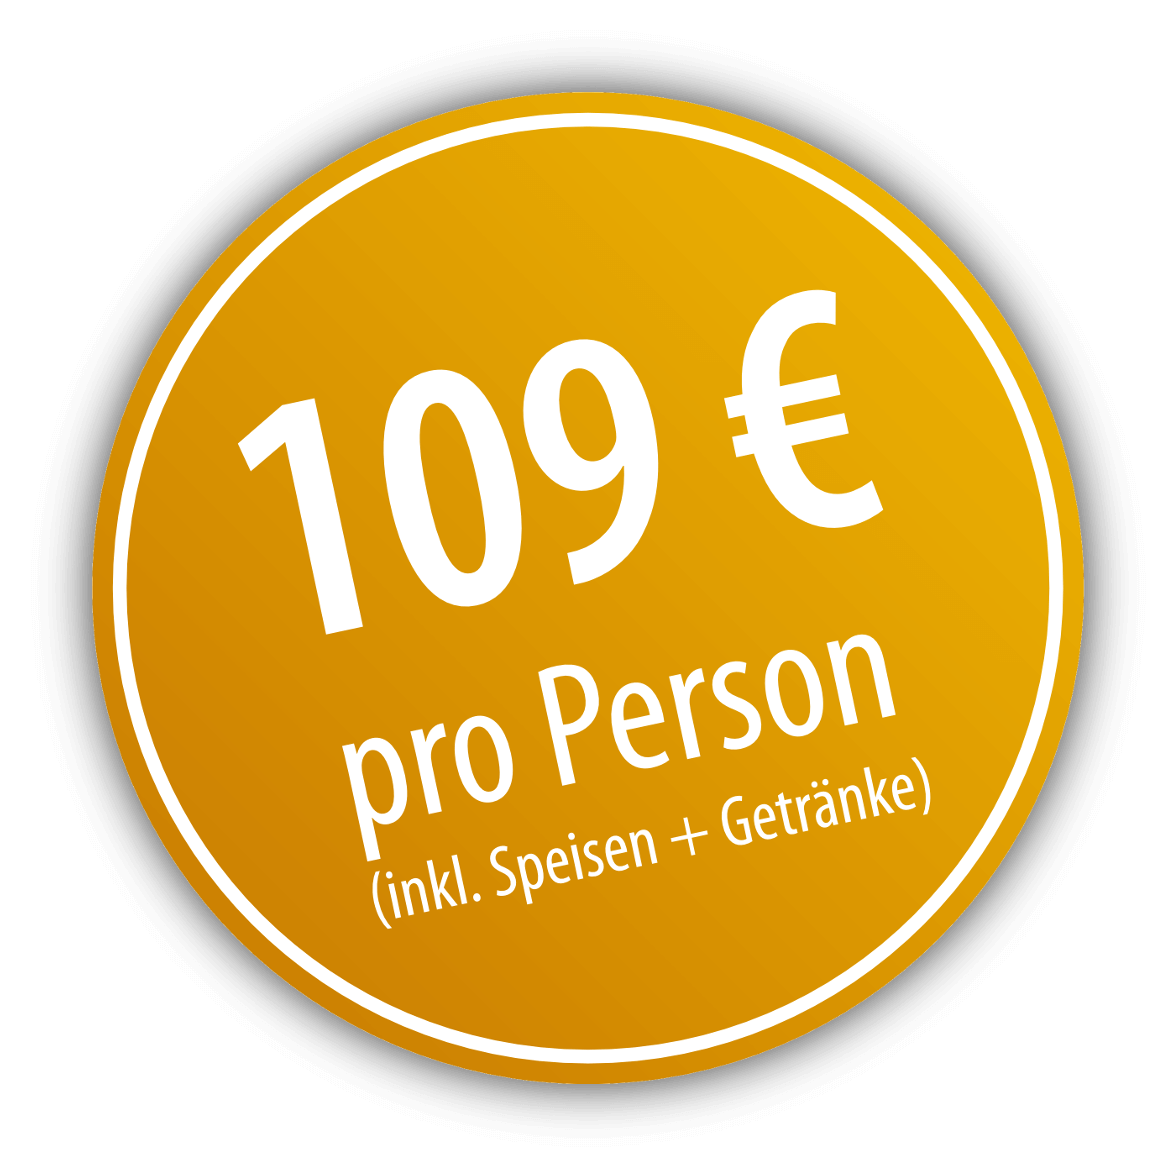 Silvestergala - 109 Euro/Person